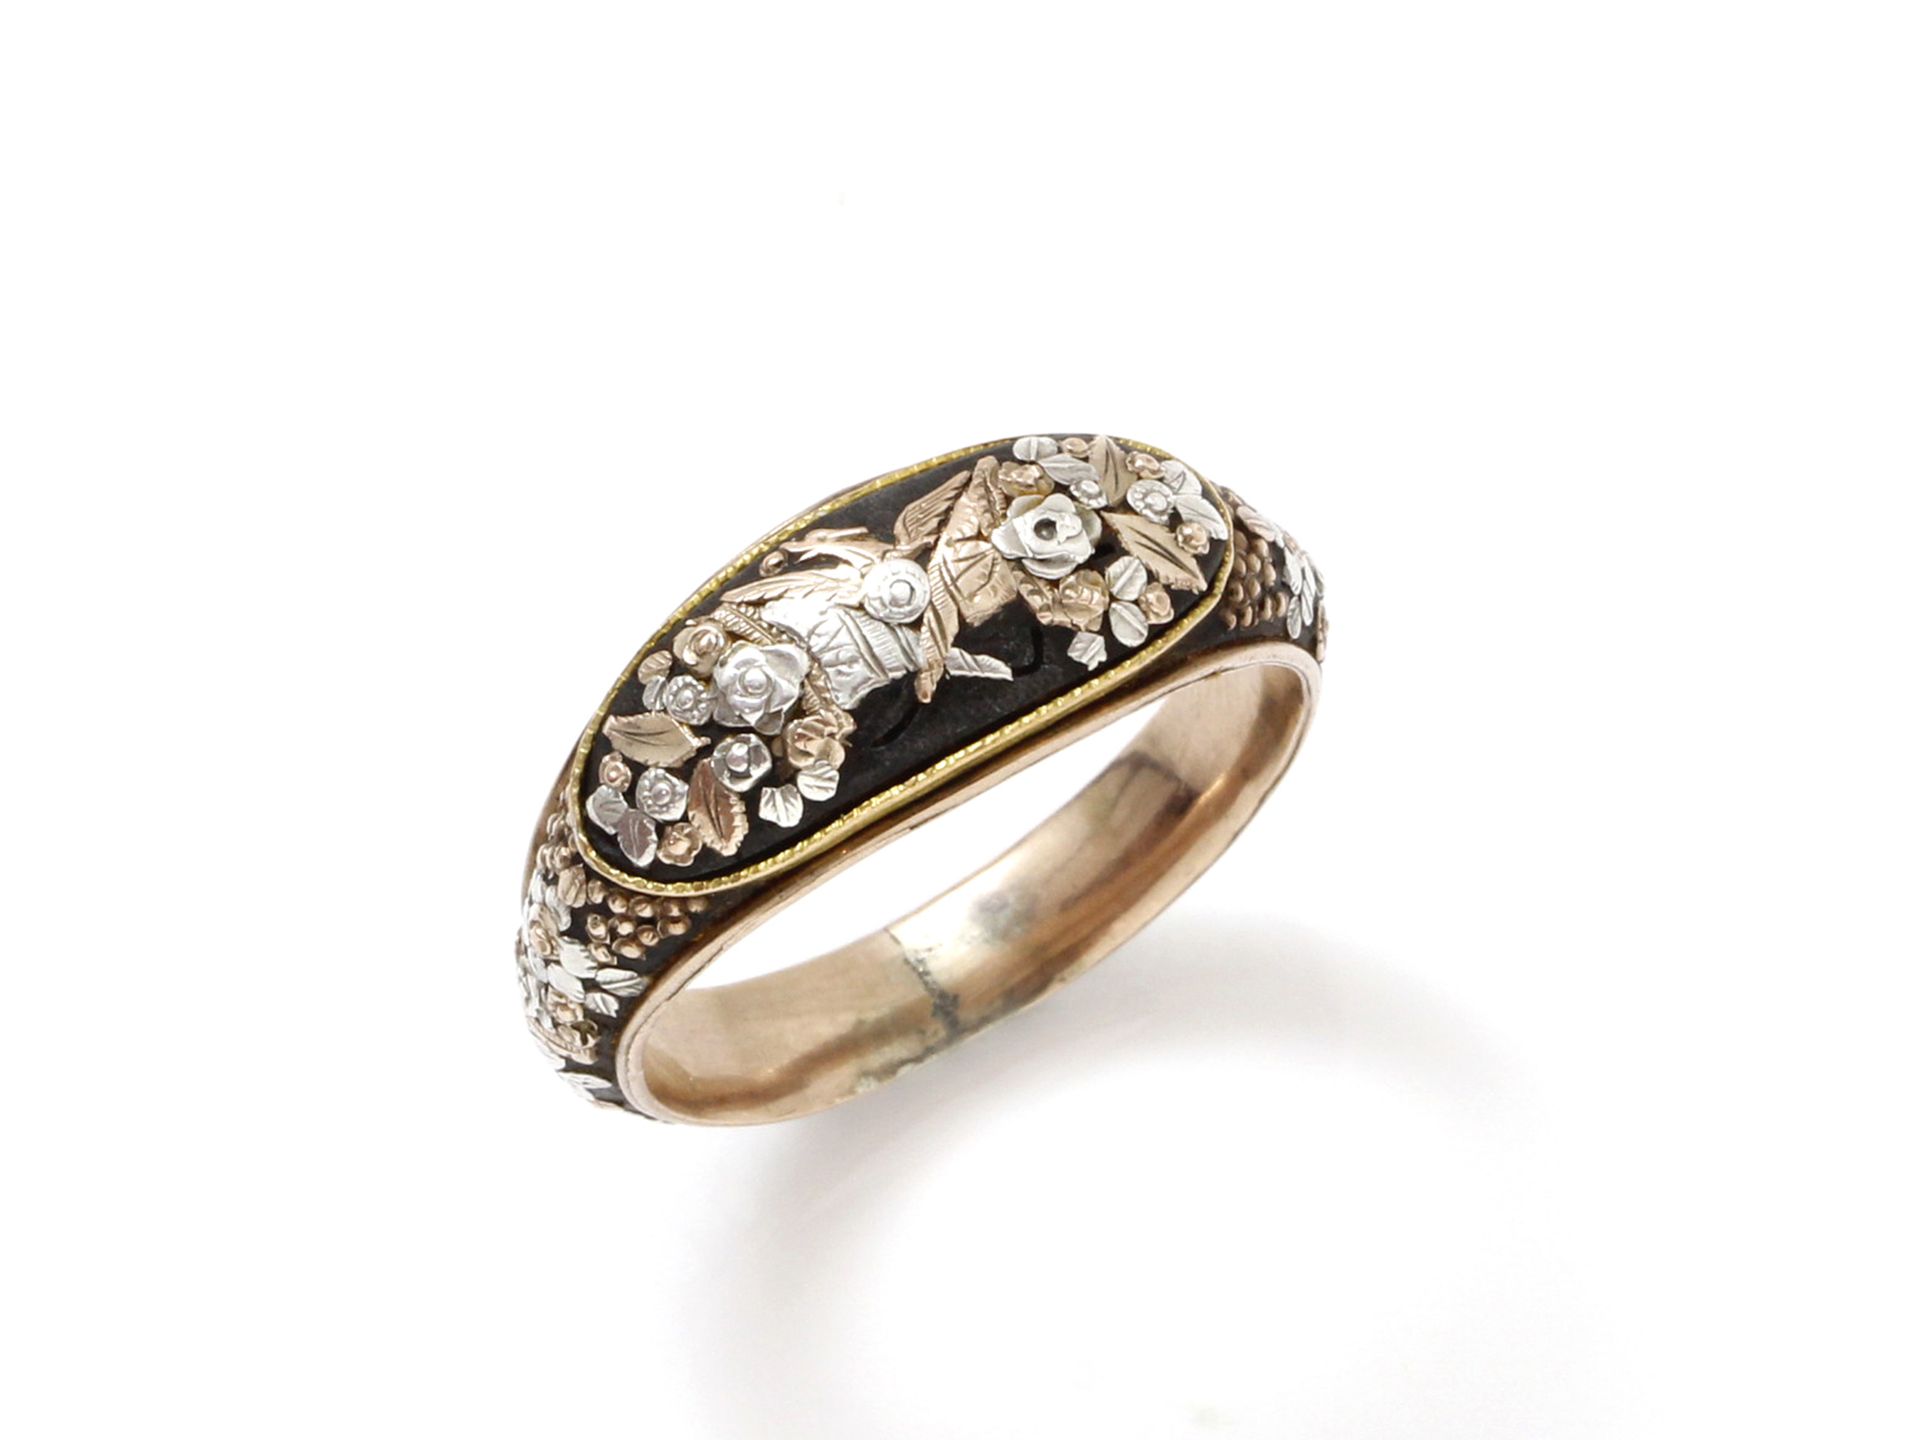 Null 非常漂亮的金银镶嵌的金属戒指，边框上有交叉的丰饶之角的装饰。19世纪前三分之一的作品。

毛重：7.10克。TDD：64。